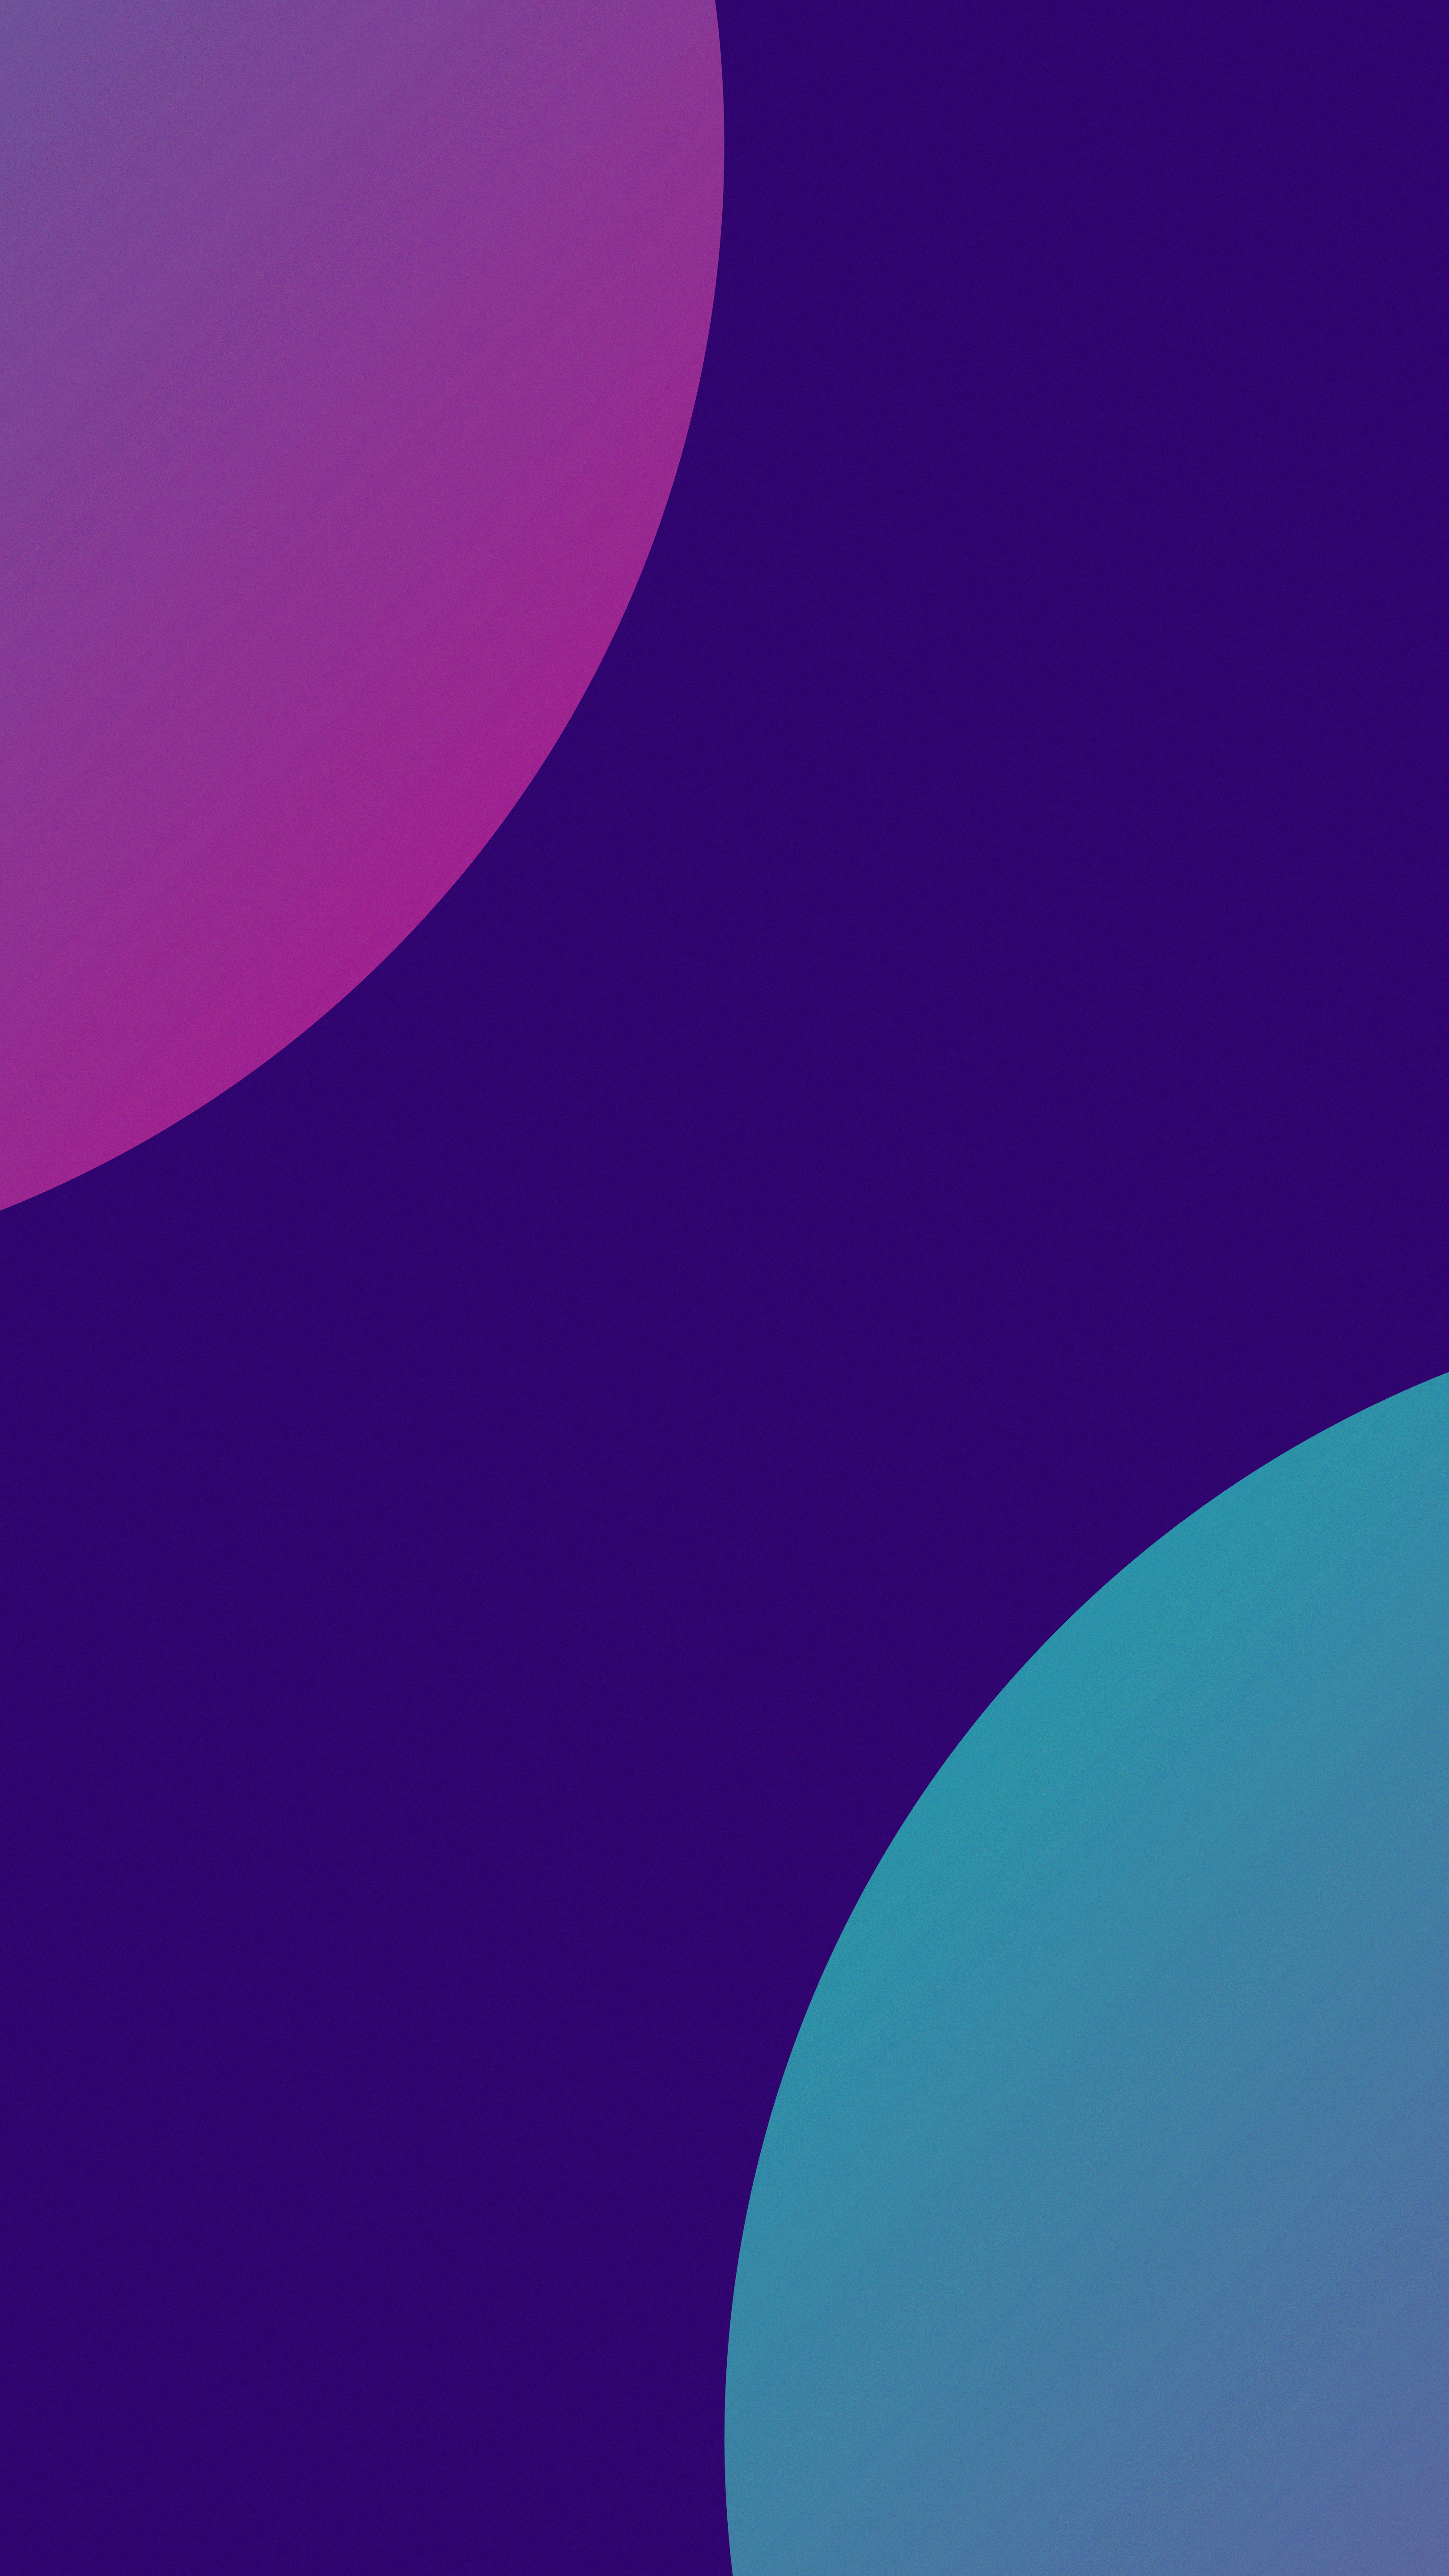 免费下载极简主义, 线, 紫色的, 光滑的, 平滑, 蓝色的, 抽象手机壁纸。